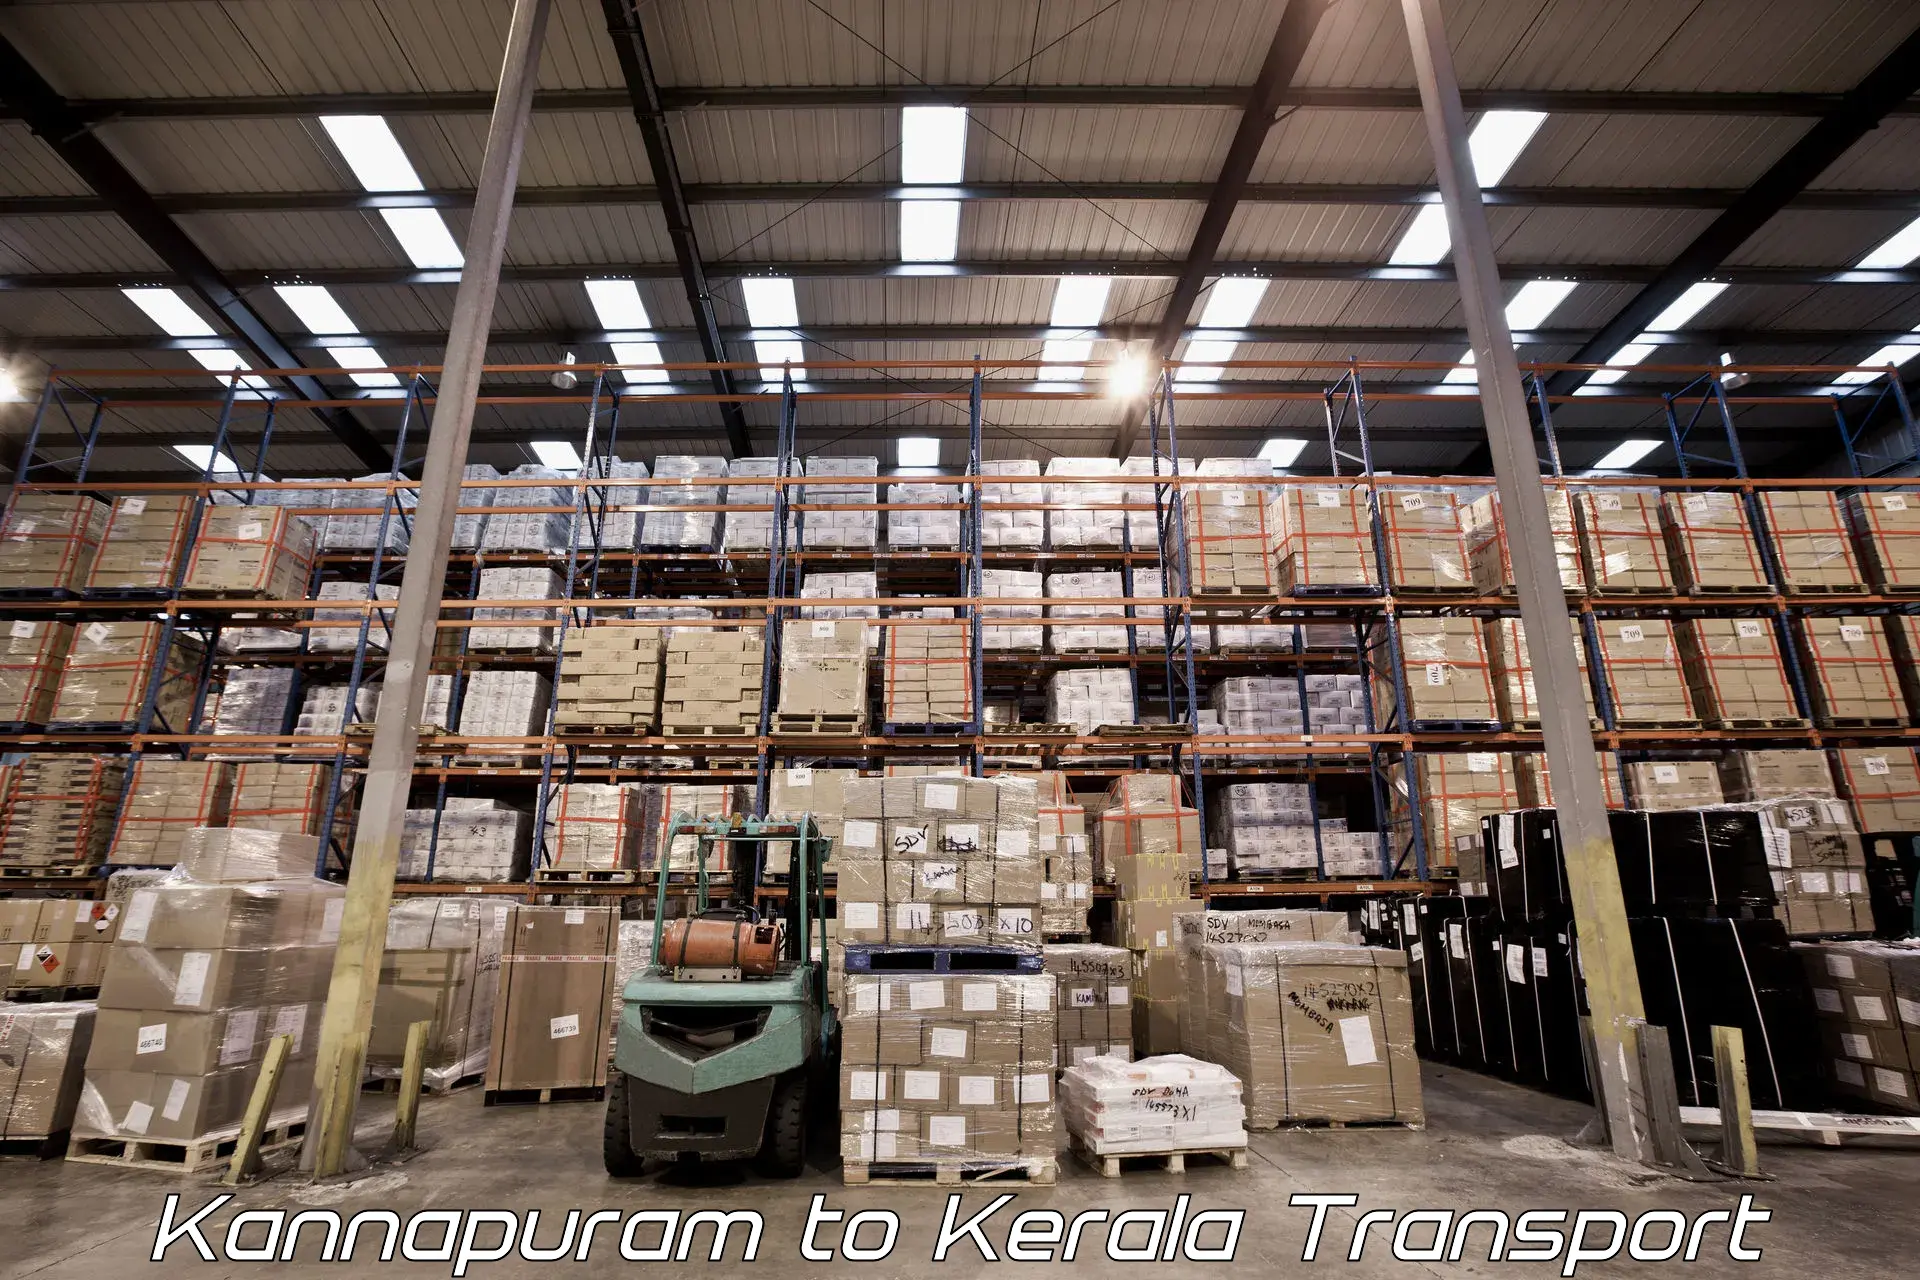 Shipping partner Kannapuram to Chungathara